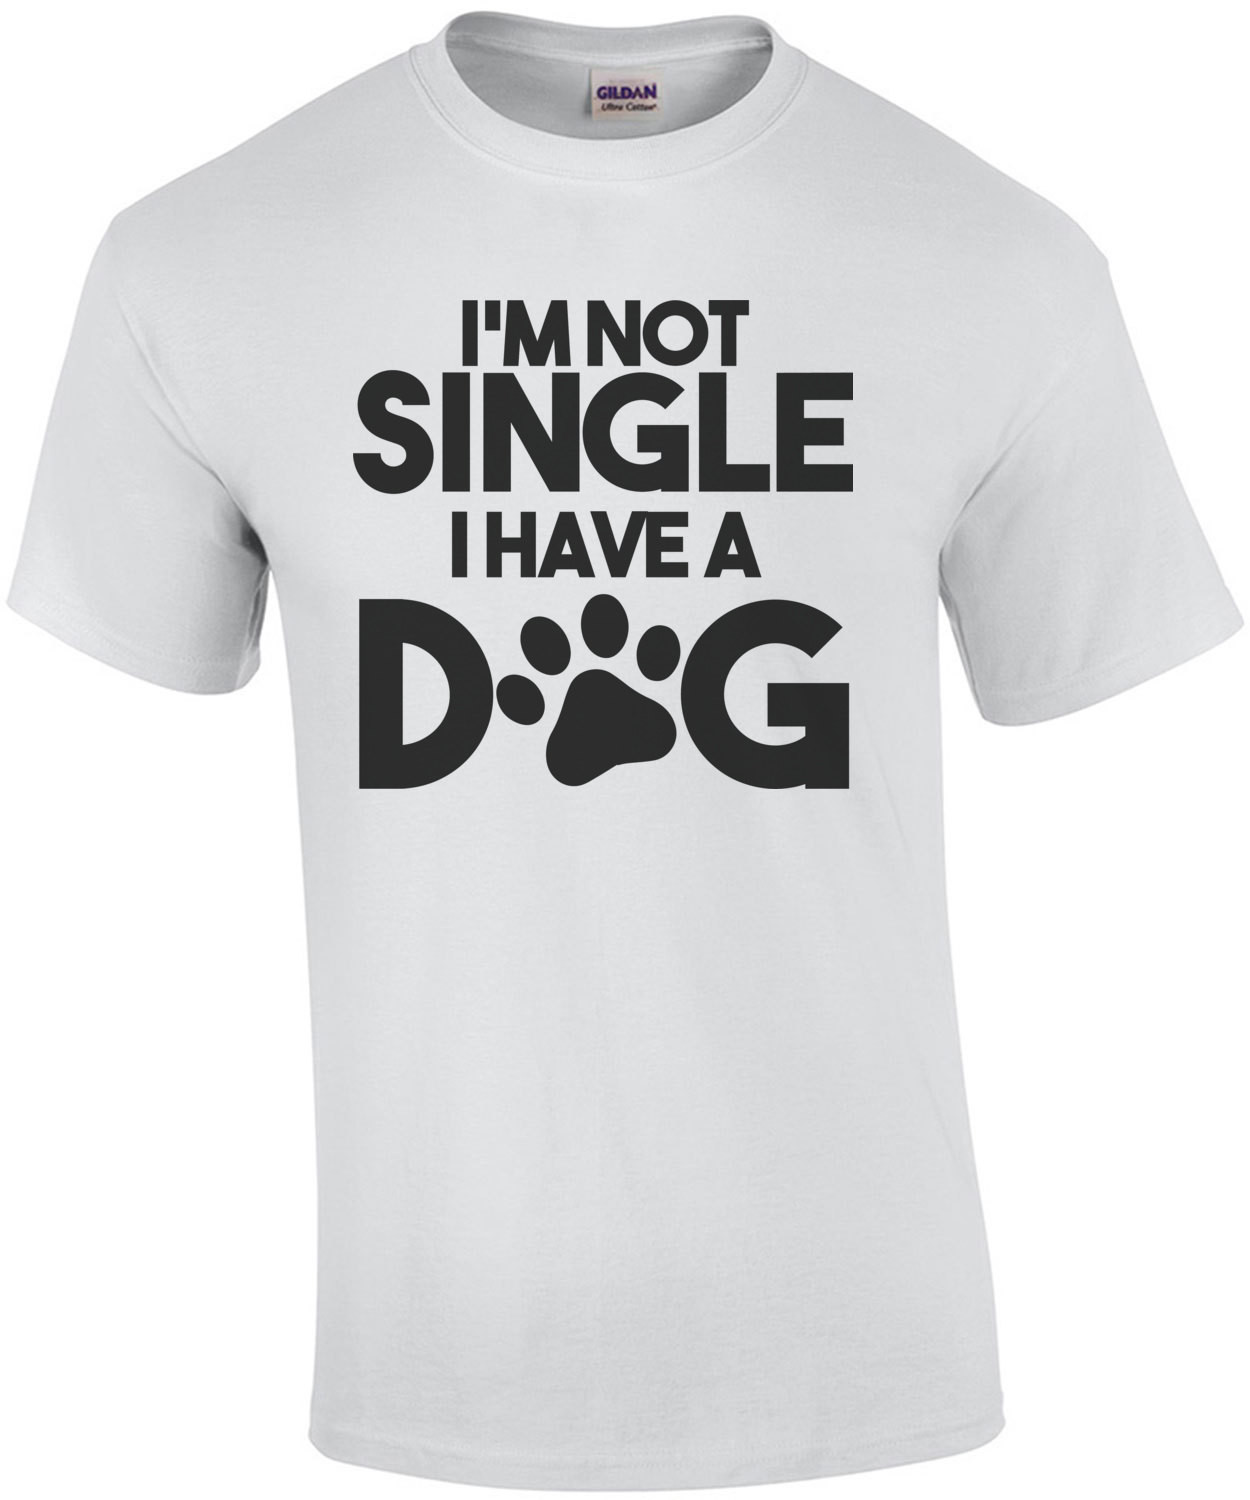 I'm not single I have a dog - dog t-shirt